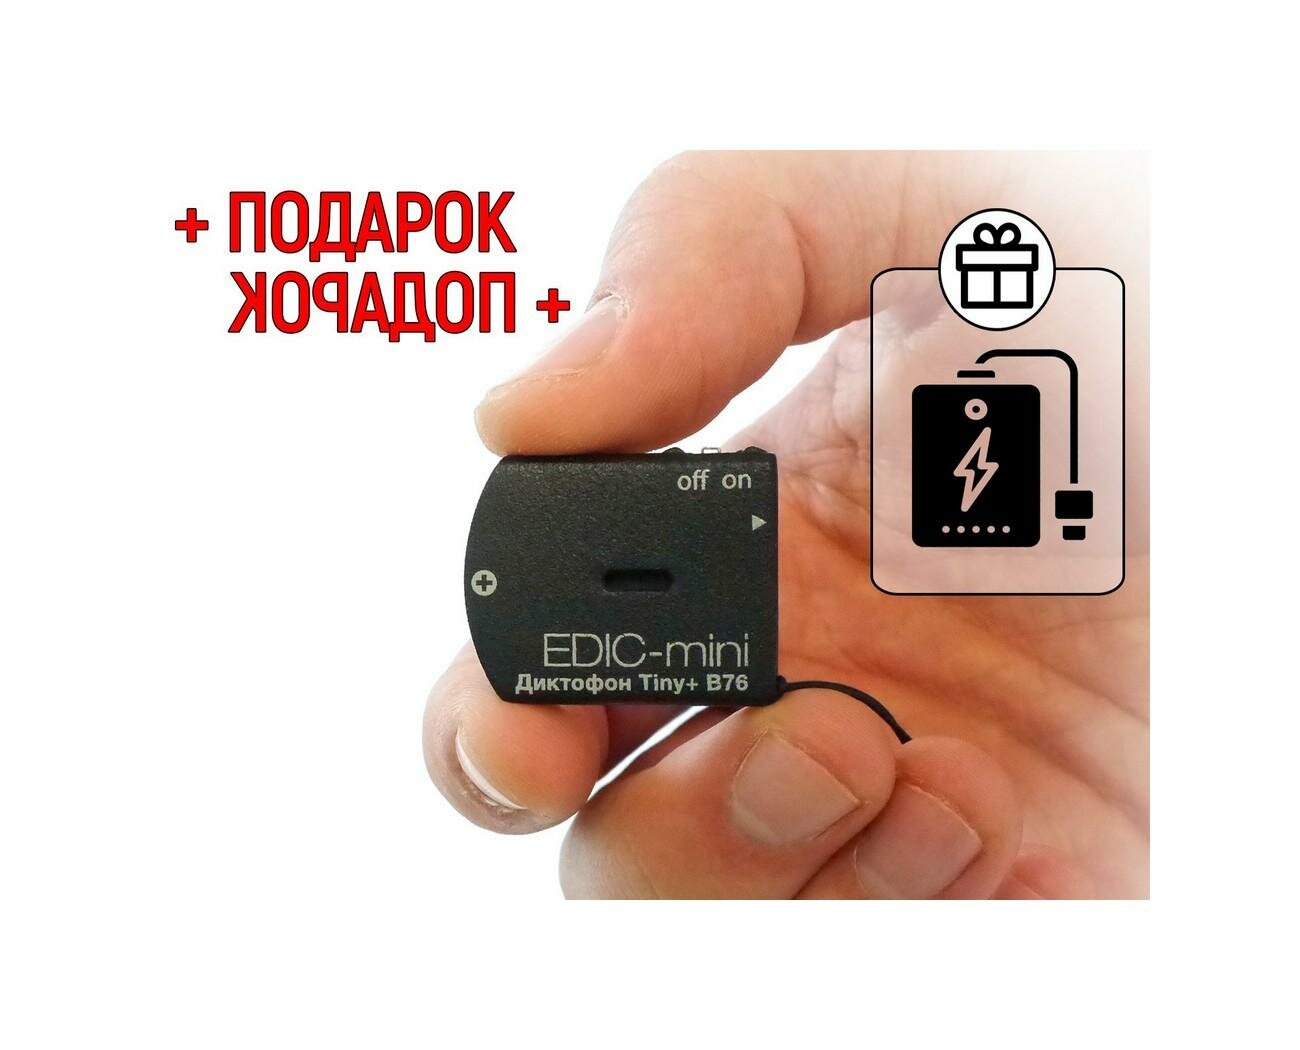 Диктофон для записи разговоров до 150 ч Edic-mini TINY мод: B76-150HQ (S1967RU) + подарок (Power-bank 10000 mAh) 2 режима: кольцевой и линейный, (луч